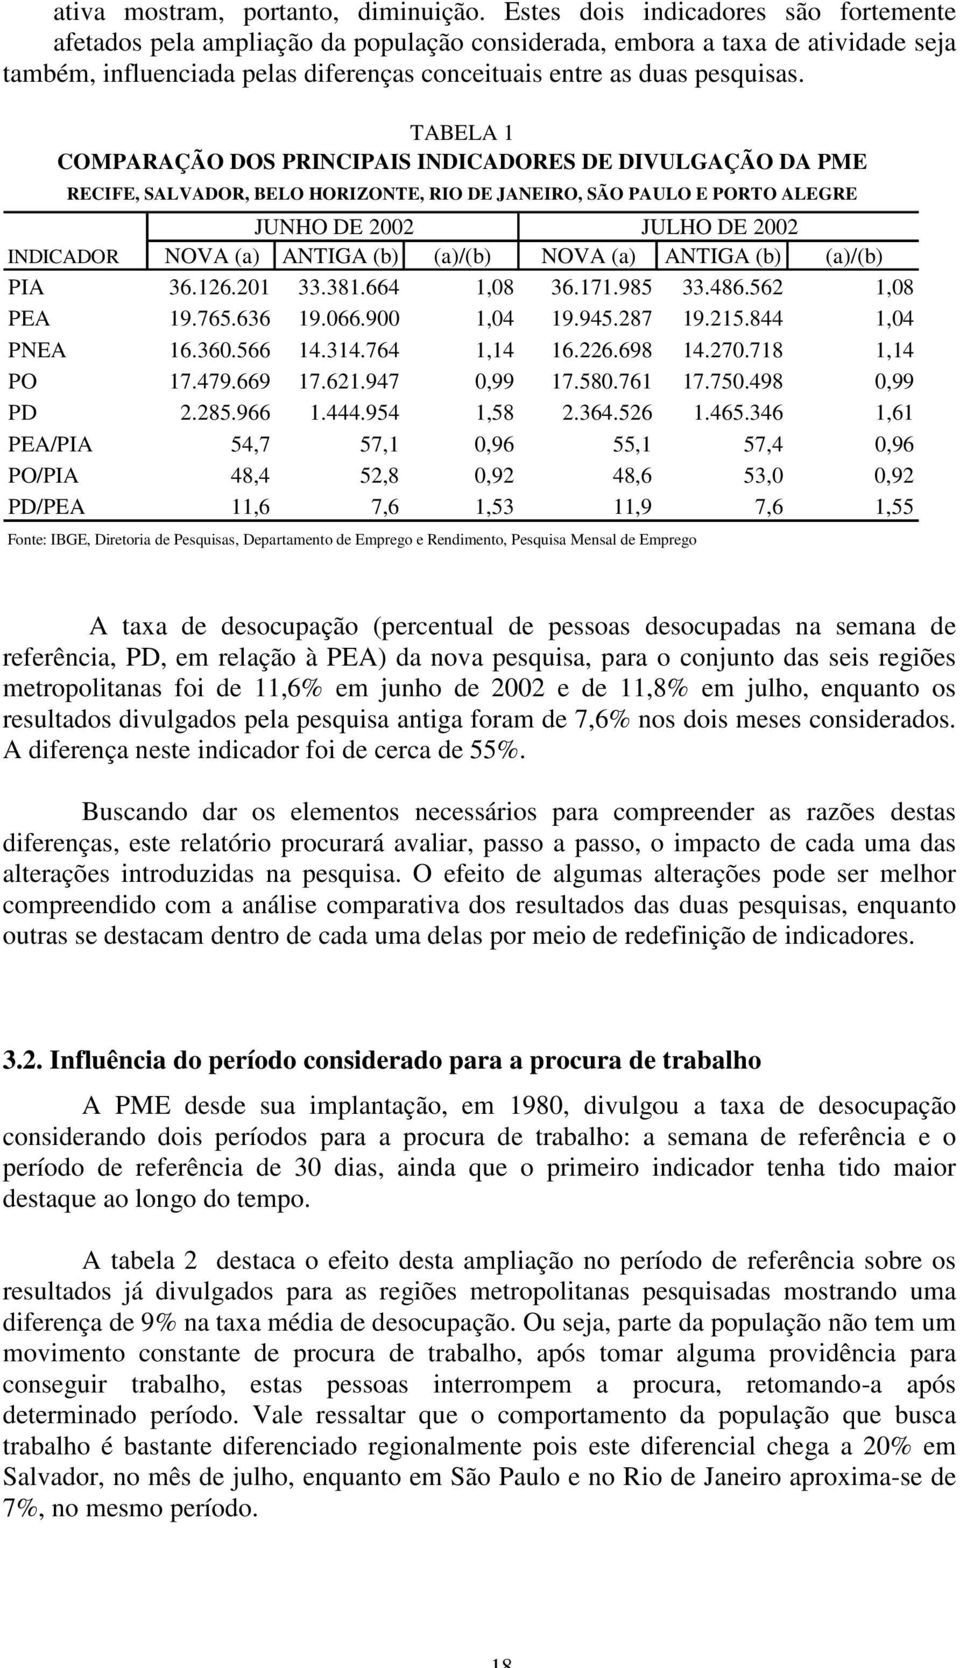 TABELA 1 COMPARAÇÃO DOS PRINCIPAIS INDICADORES DE DIVULGAÇÃO DA PME RECIFE, SALVADOR, BELO HORIZONTE, RIO DE JANEIRO, SÃO PAULO E PORTO ALEGRE JUNHO DE 2002 JULHO DE 2002 INDICADOR NOVA (a) ANTIGA